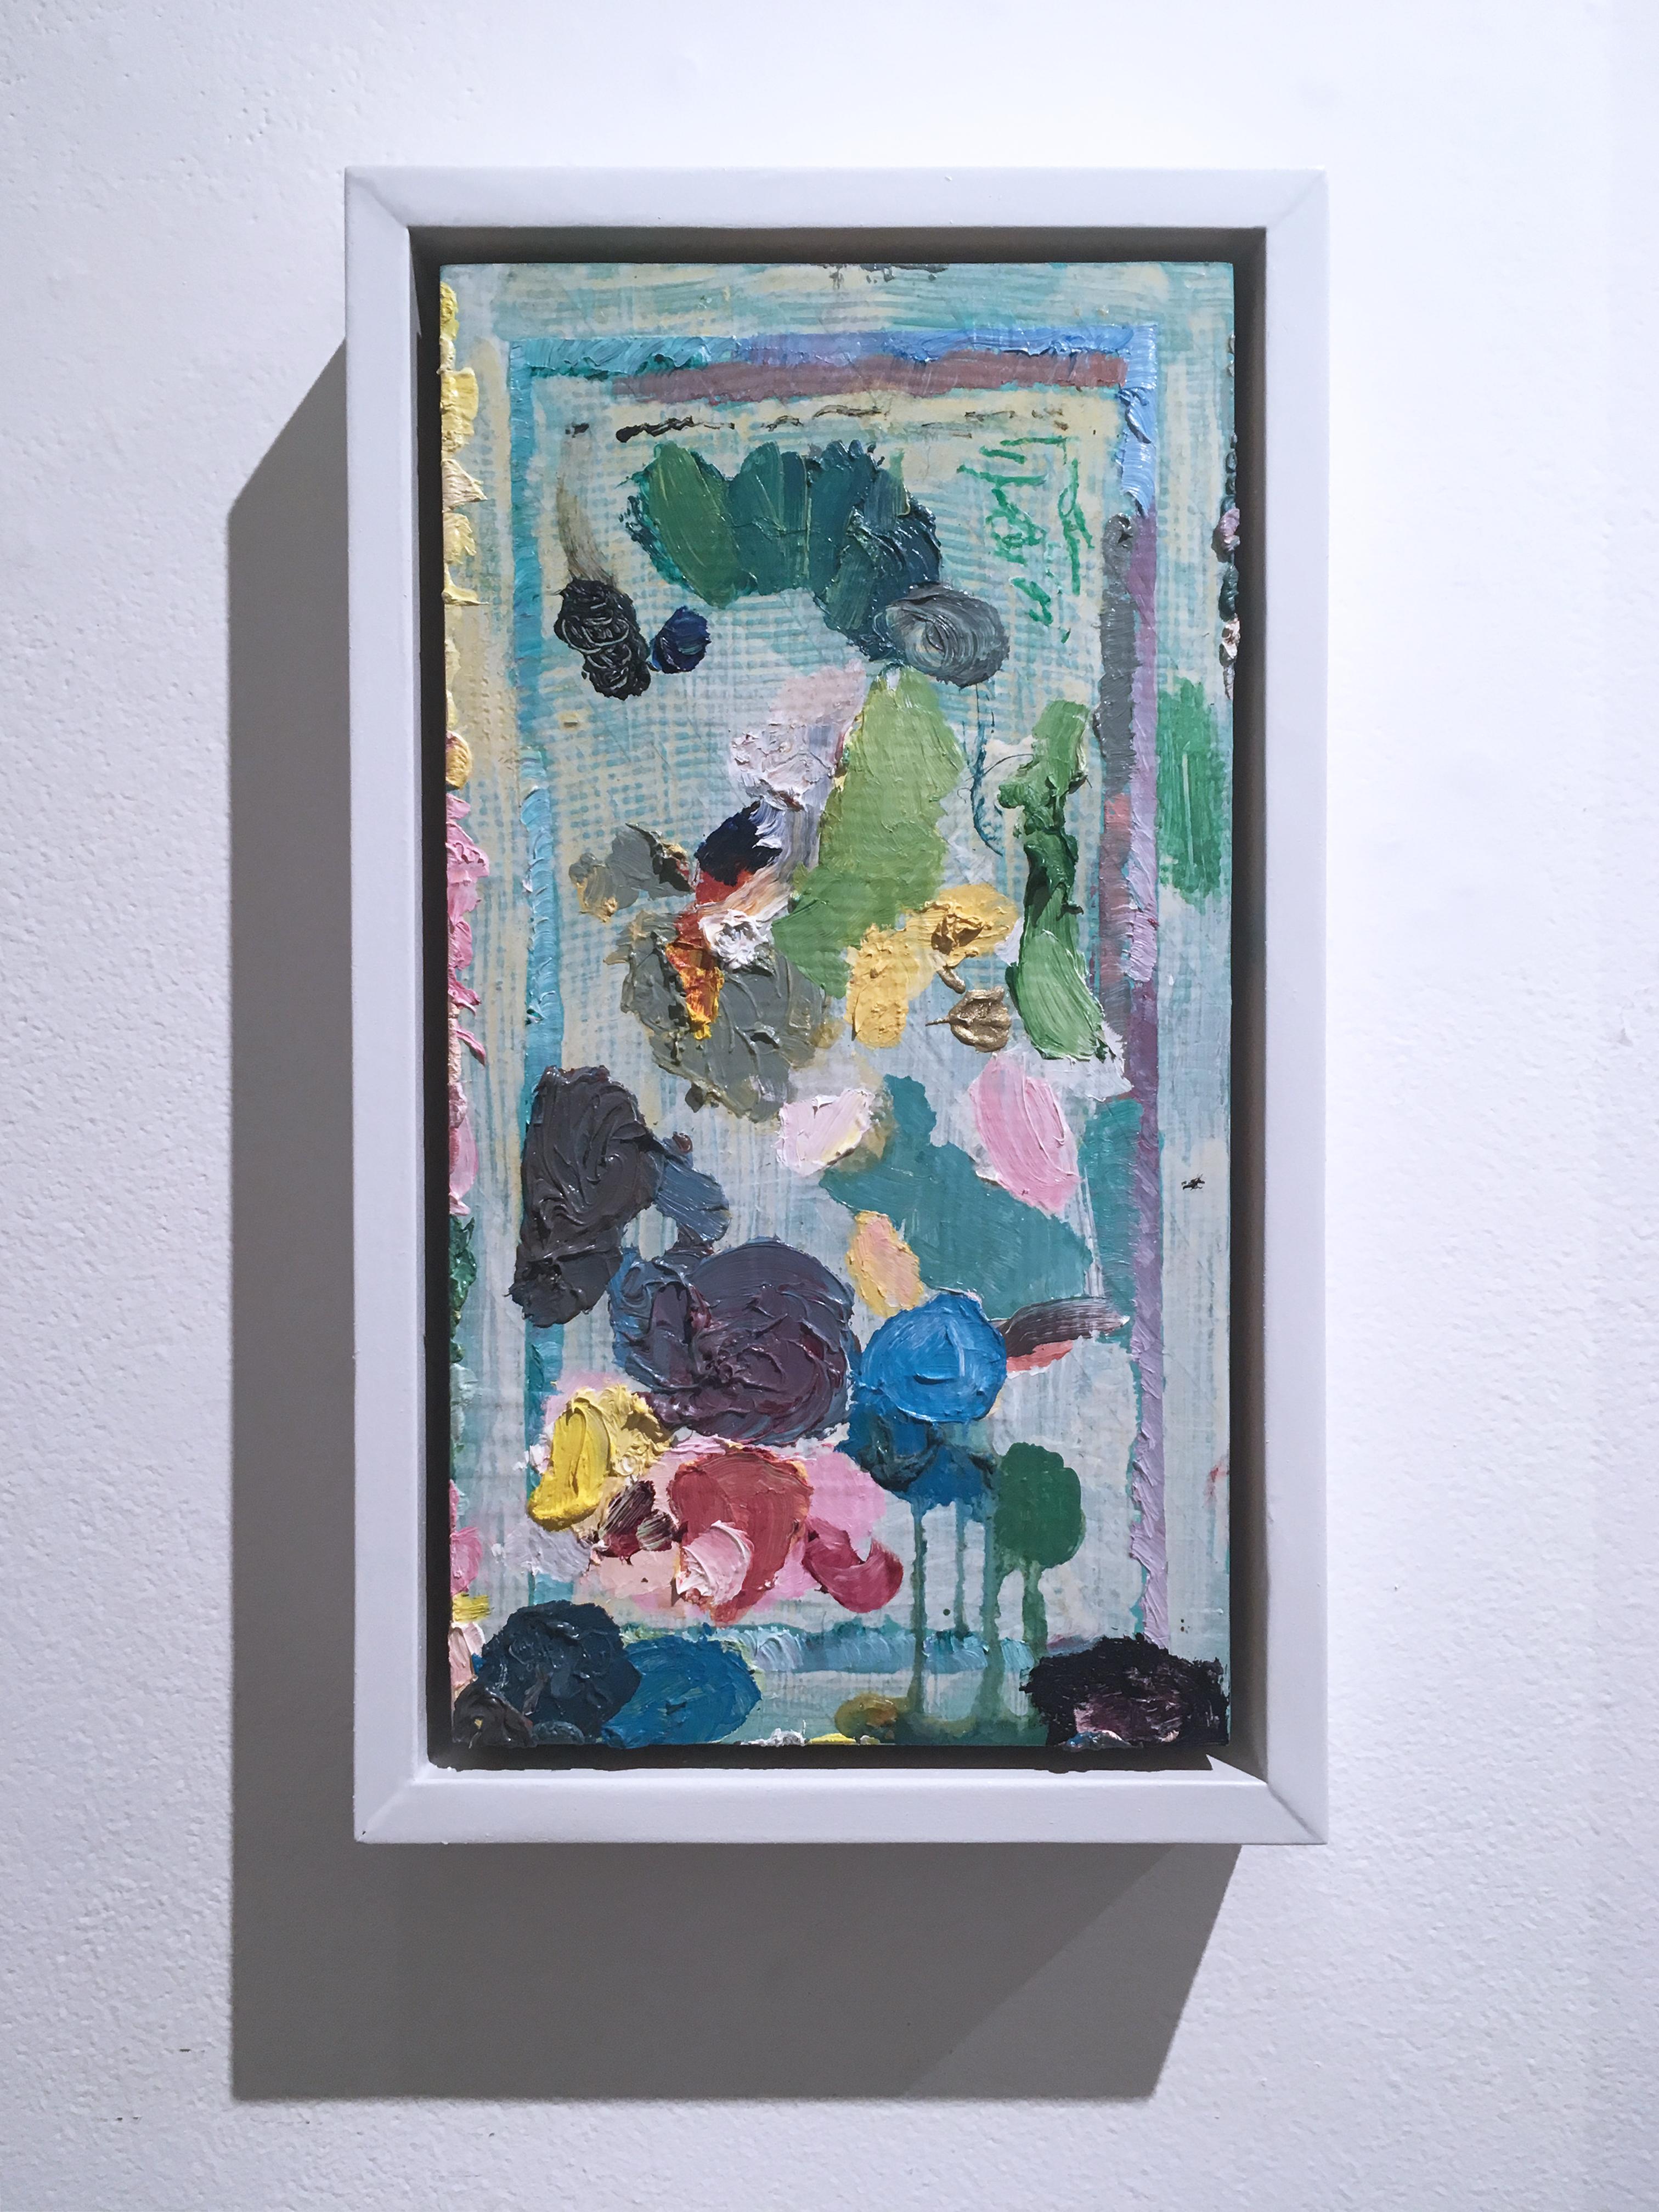 Just A Mess, 2018, acrylique, huile, pastel, panneau, vert, rose, abstrait, cadre - Painting de Macauley Norman